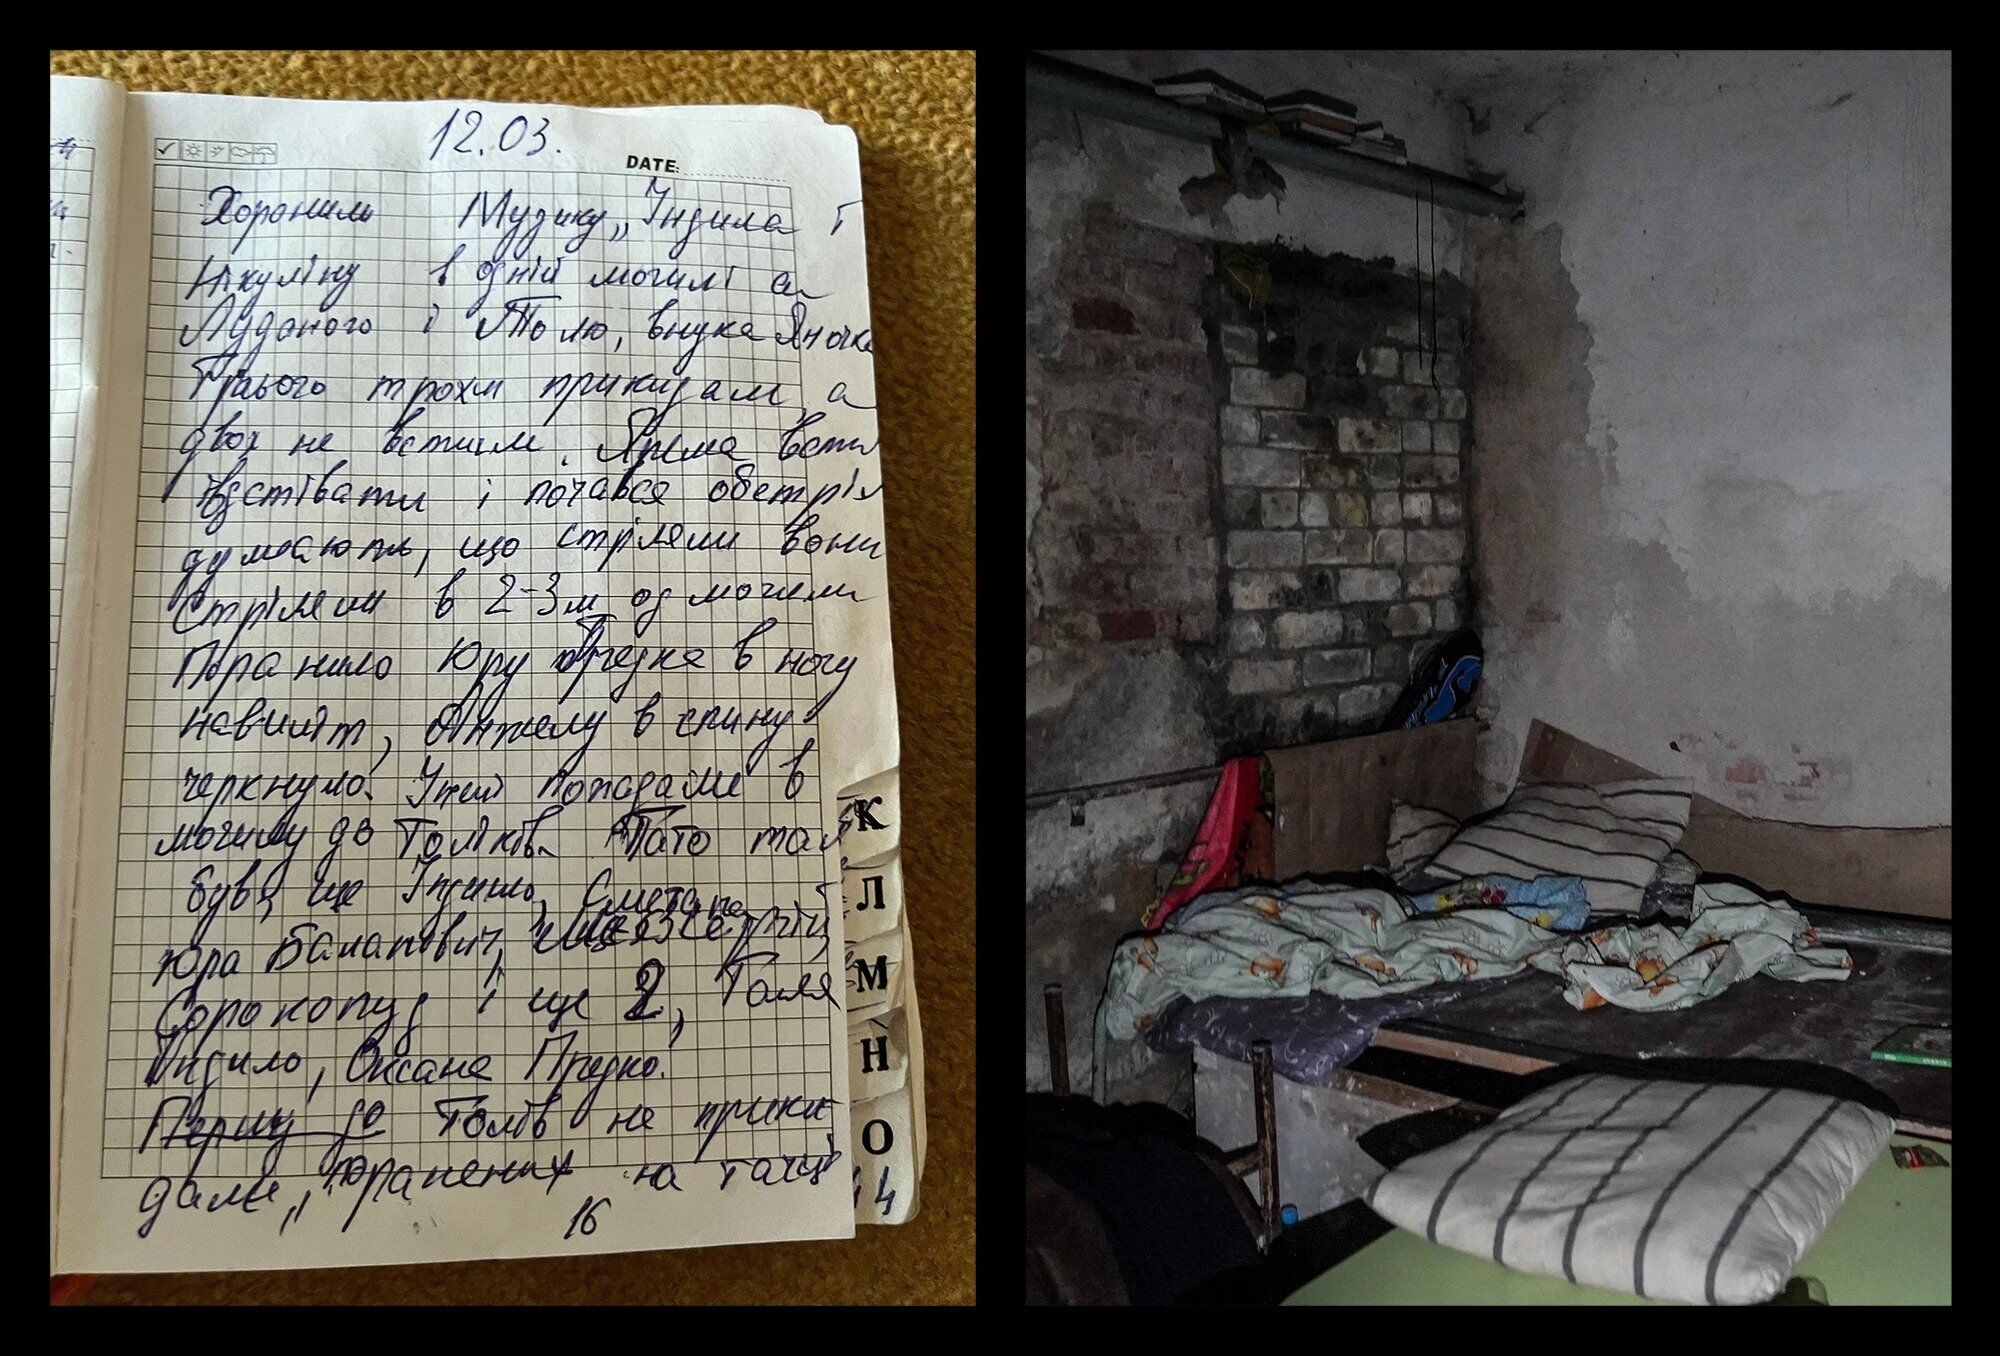 Журнал TIME розмістив на обкладинці фото з підвалу у Ягідному, де окупанти майже місяць утримували українців 